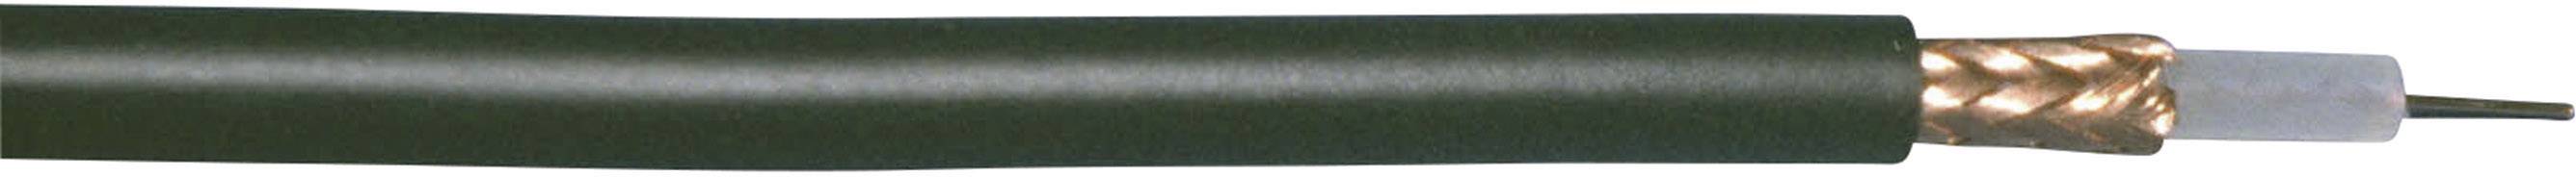 BEDEA Koaxialkabel Außen-Durchmesser: 6.15 mm RG59 75 ¿ Schwarz Bedea 10850911 Meterware